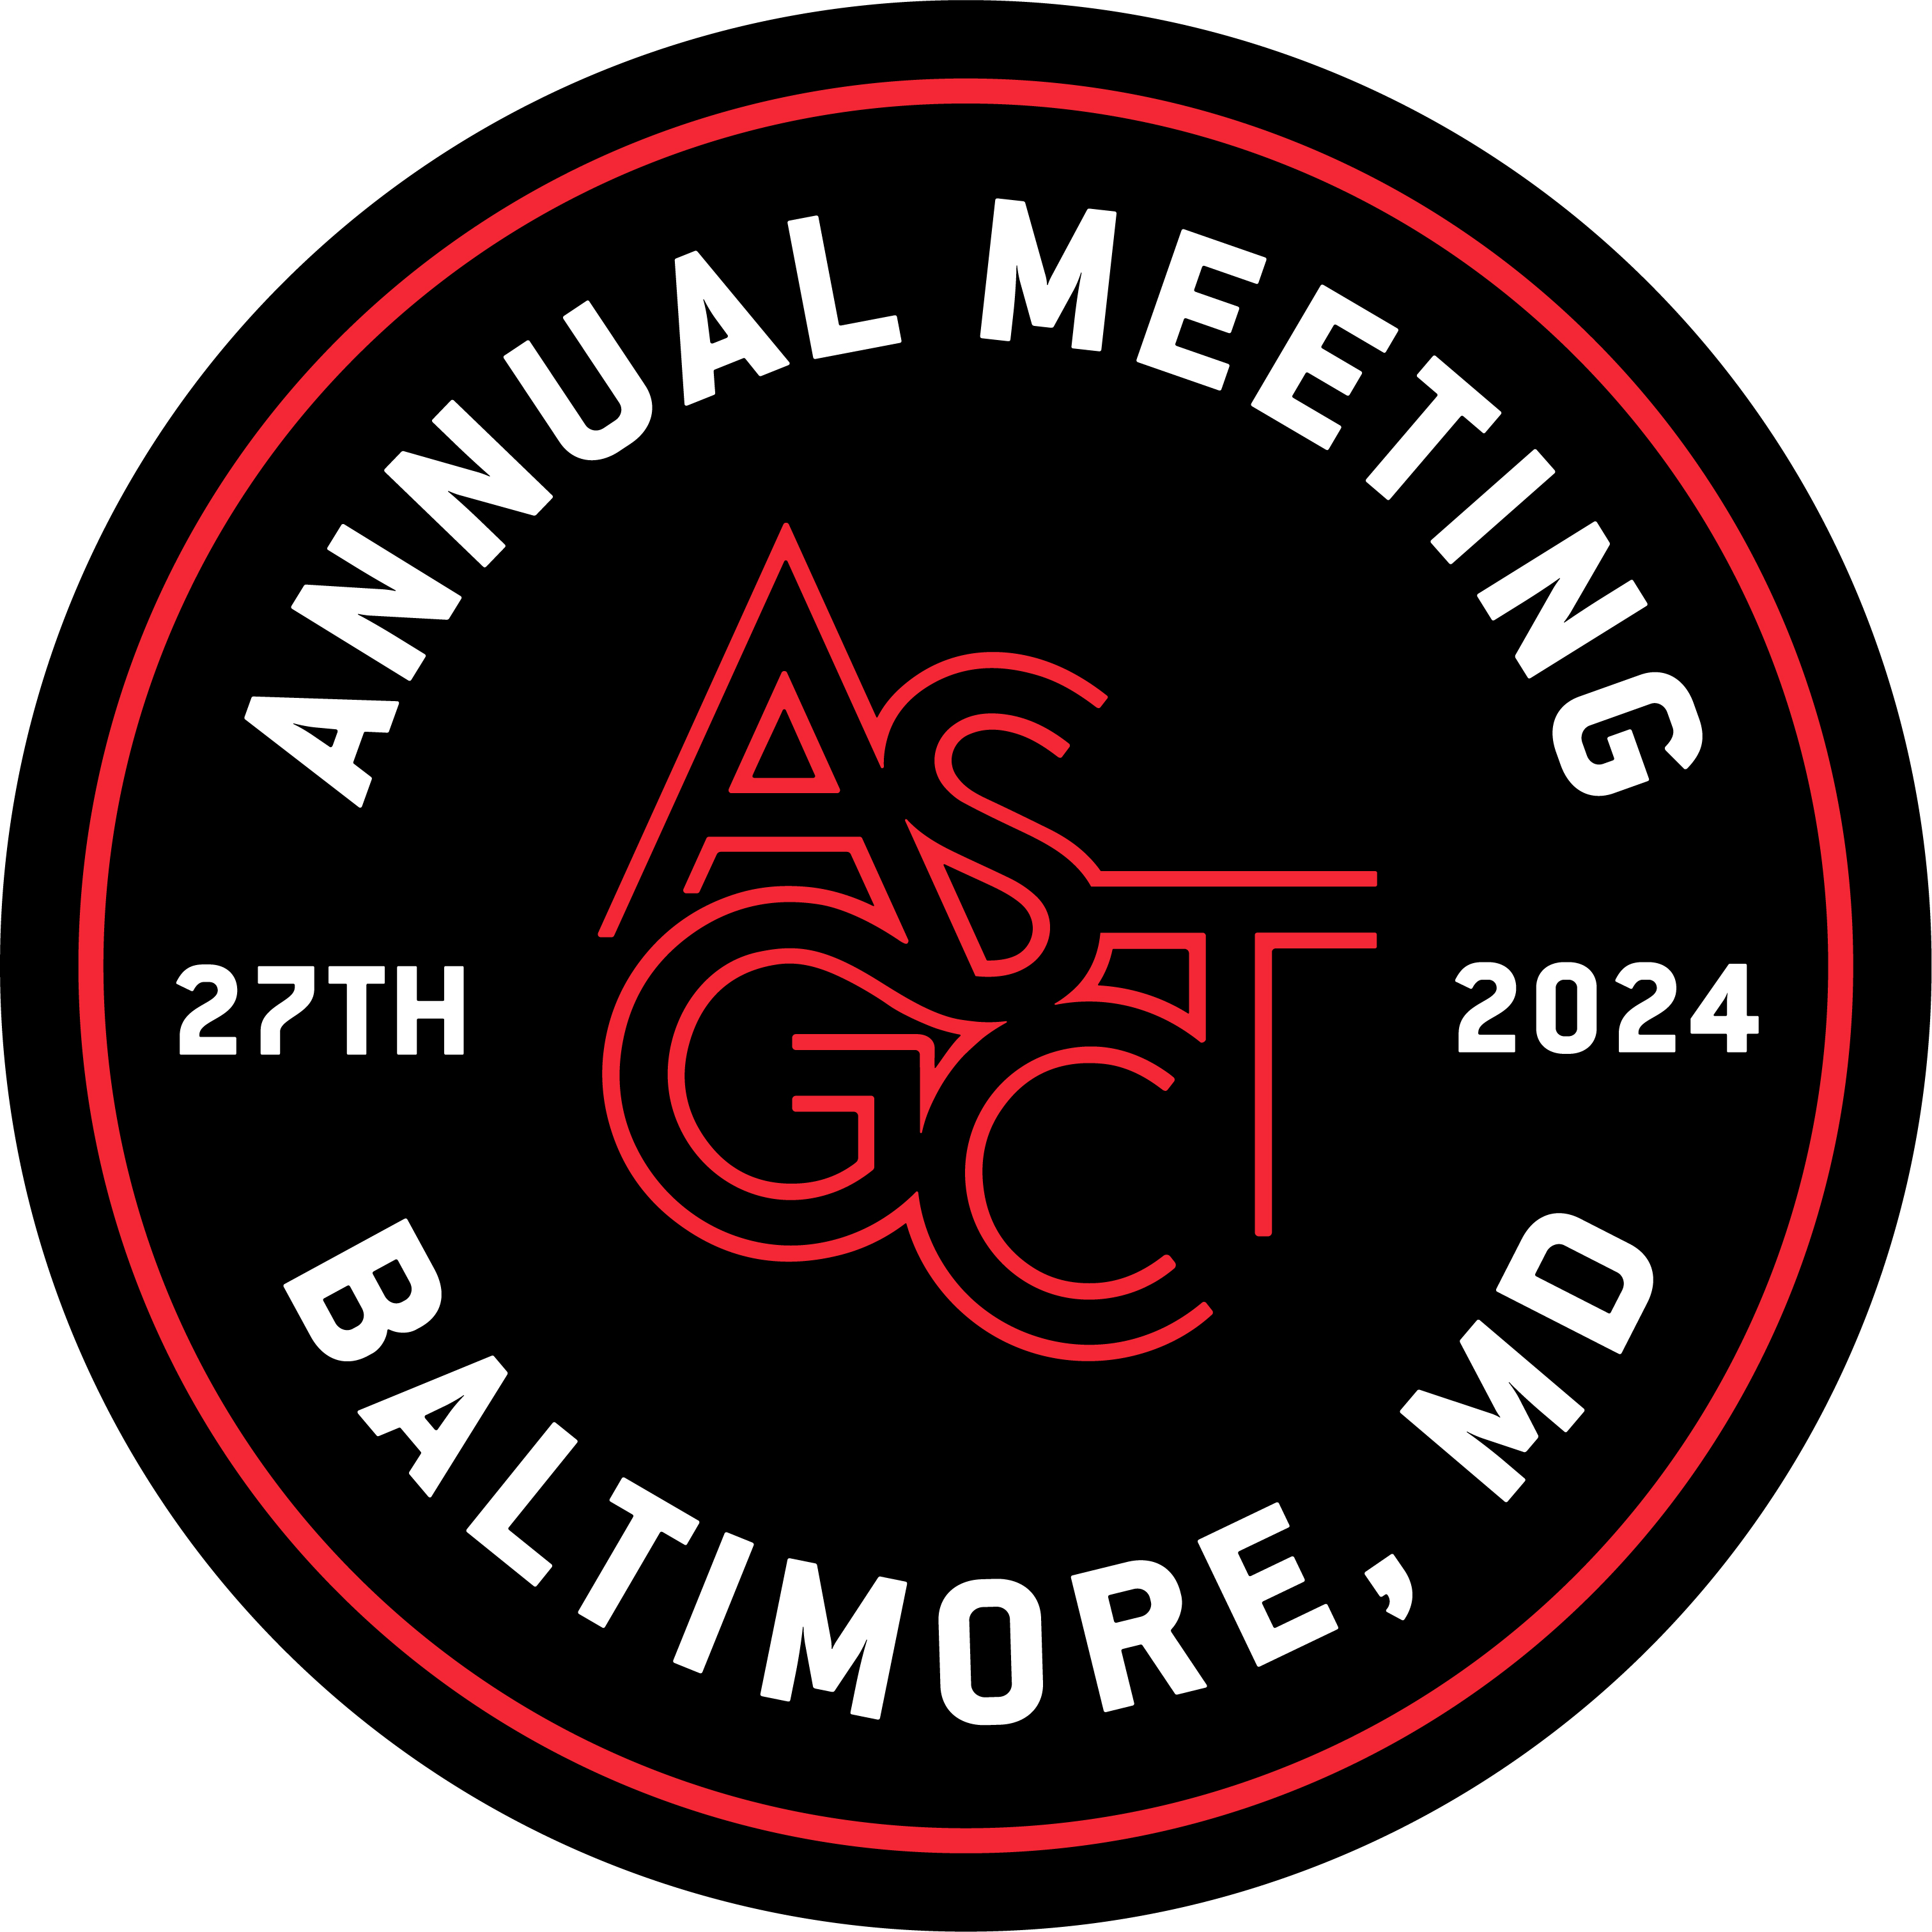 ASGCT\'s 27th Annual Meeting